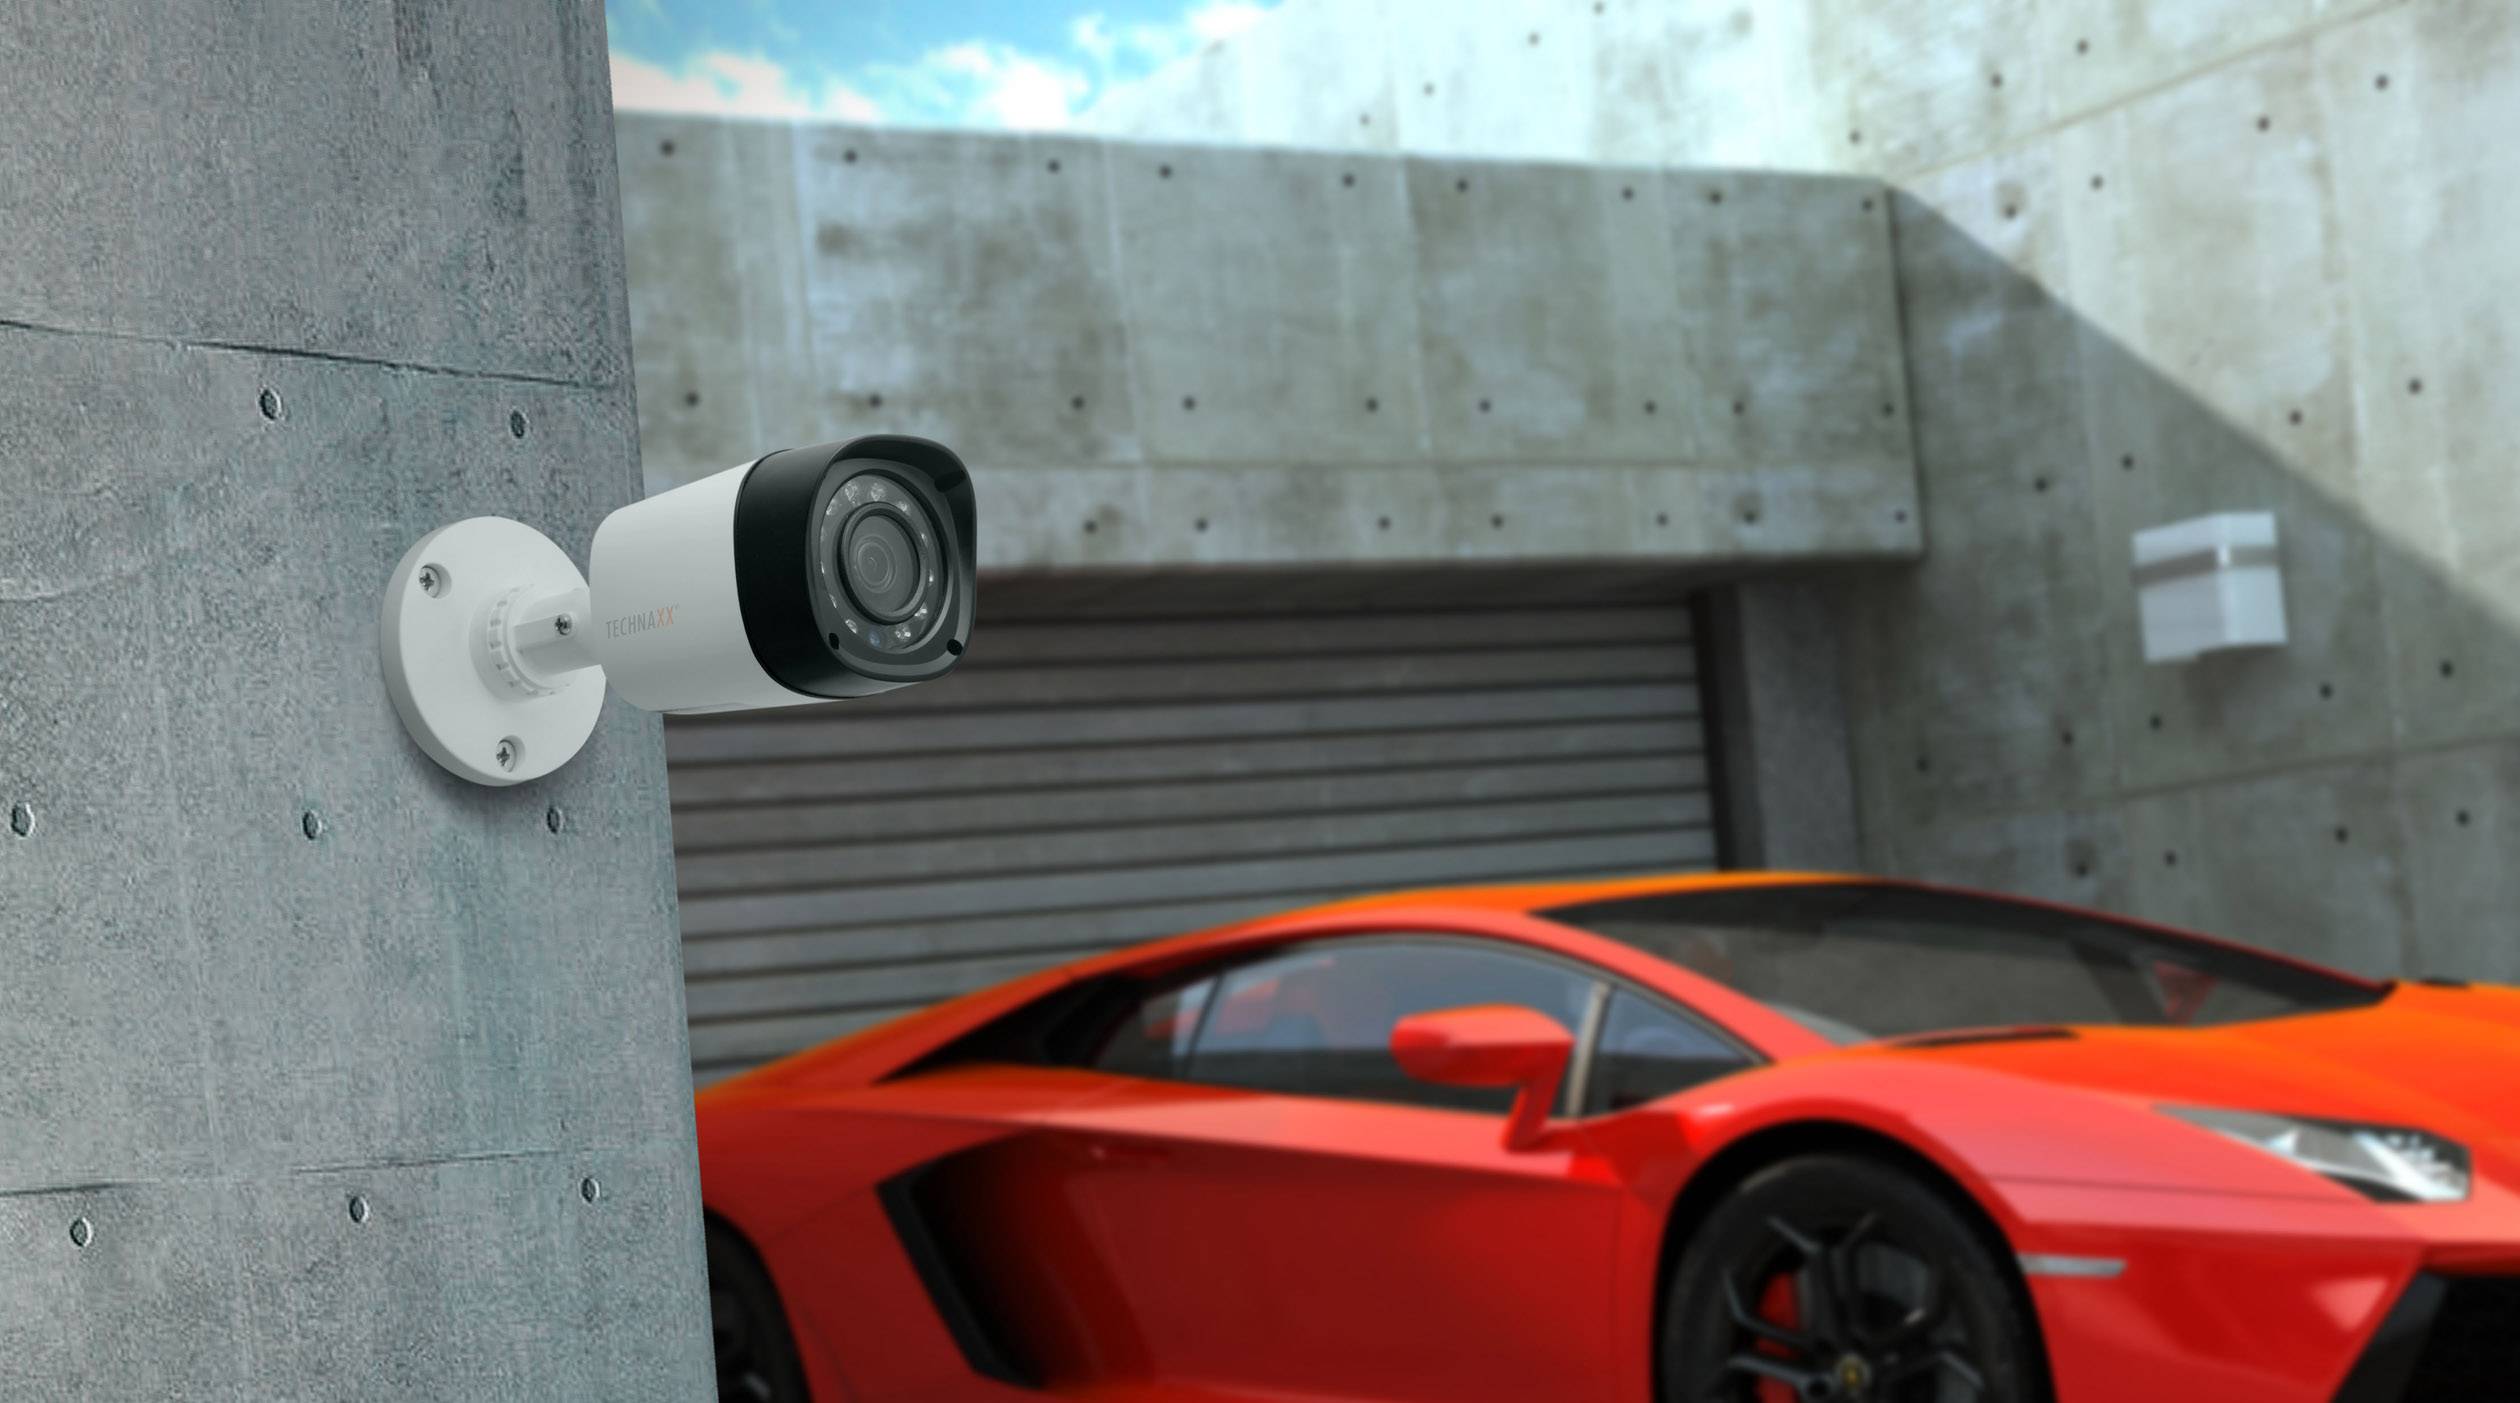 Bewakingscamera's voor allround zicht